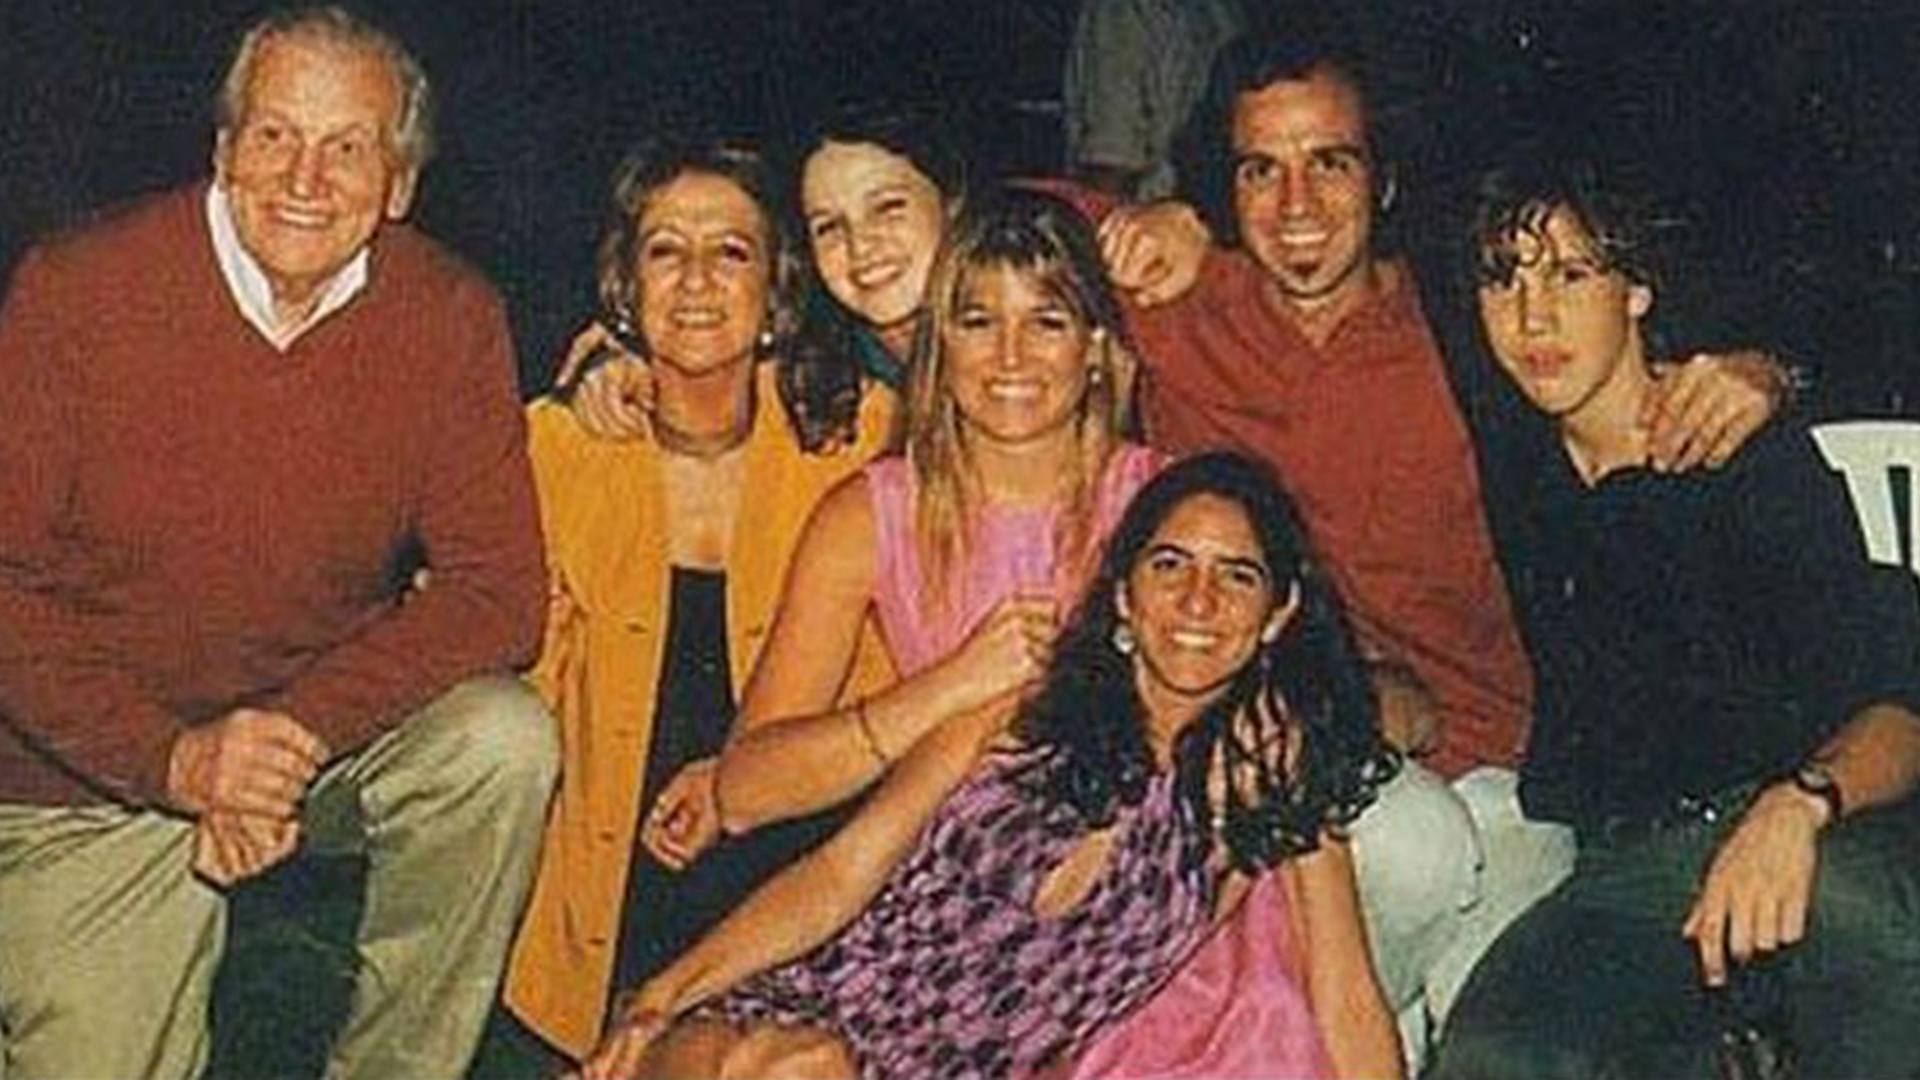 La familia de Máxima a pleno, junto con sus padres Jorge Zorreguieta y María del Carmen Cerruti Carricart 